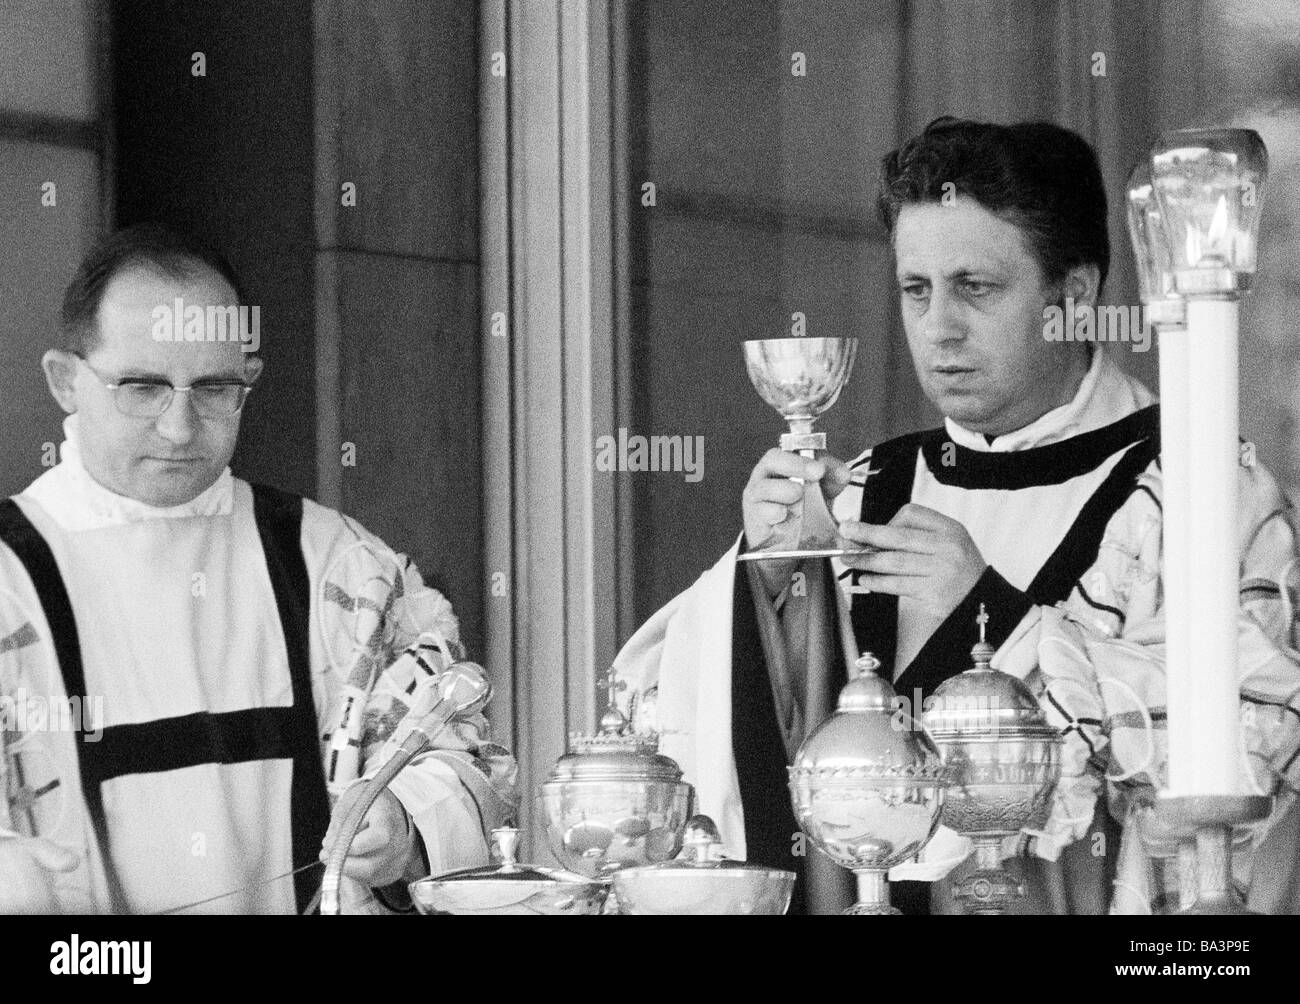 Negli anni settanta, foto in bianco e nero, la religione, il cristianesimo, Santa Messa, Eucaristia sacerdote mantiene la comunione cup, a parte un accolito, di età compresa tra 40 a 50 anni Foto Stock